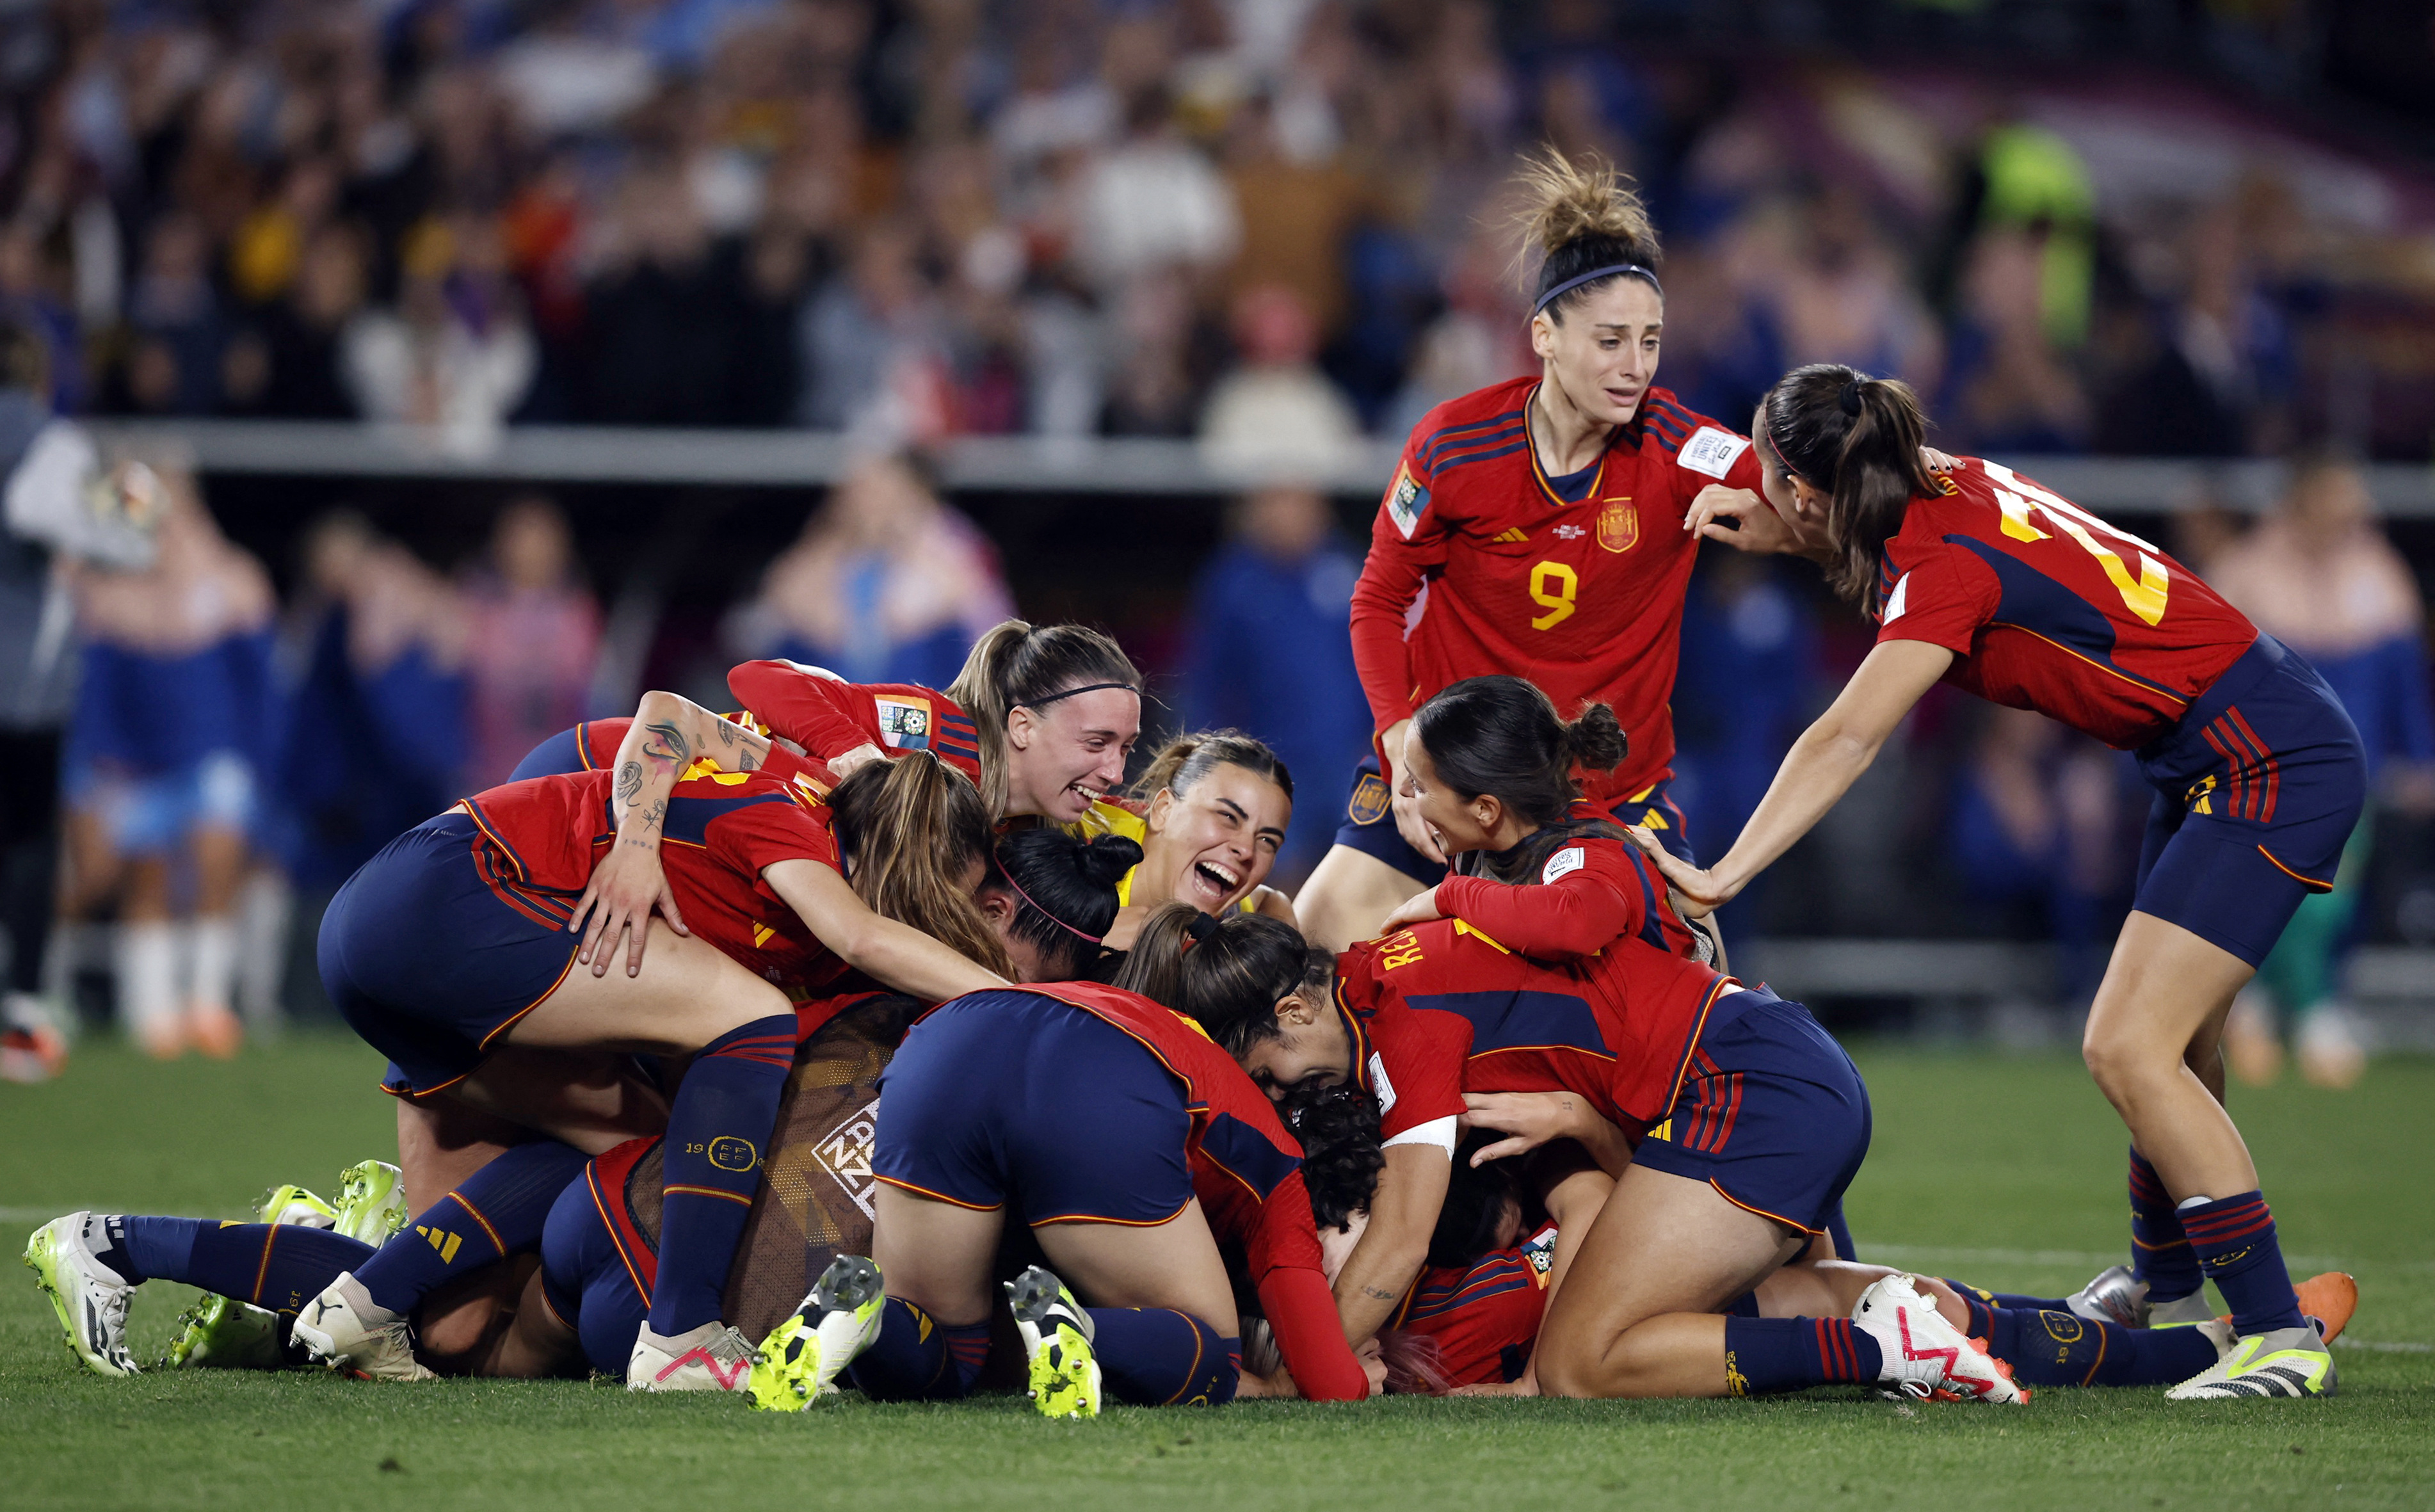 A pesar de haber terminado el Mundial de Fútbol Femenino, TVE